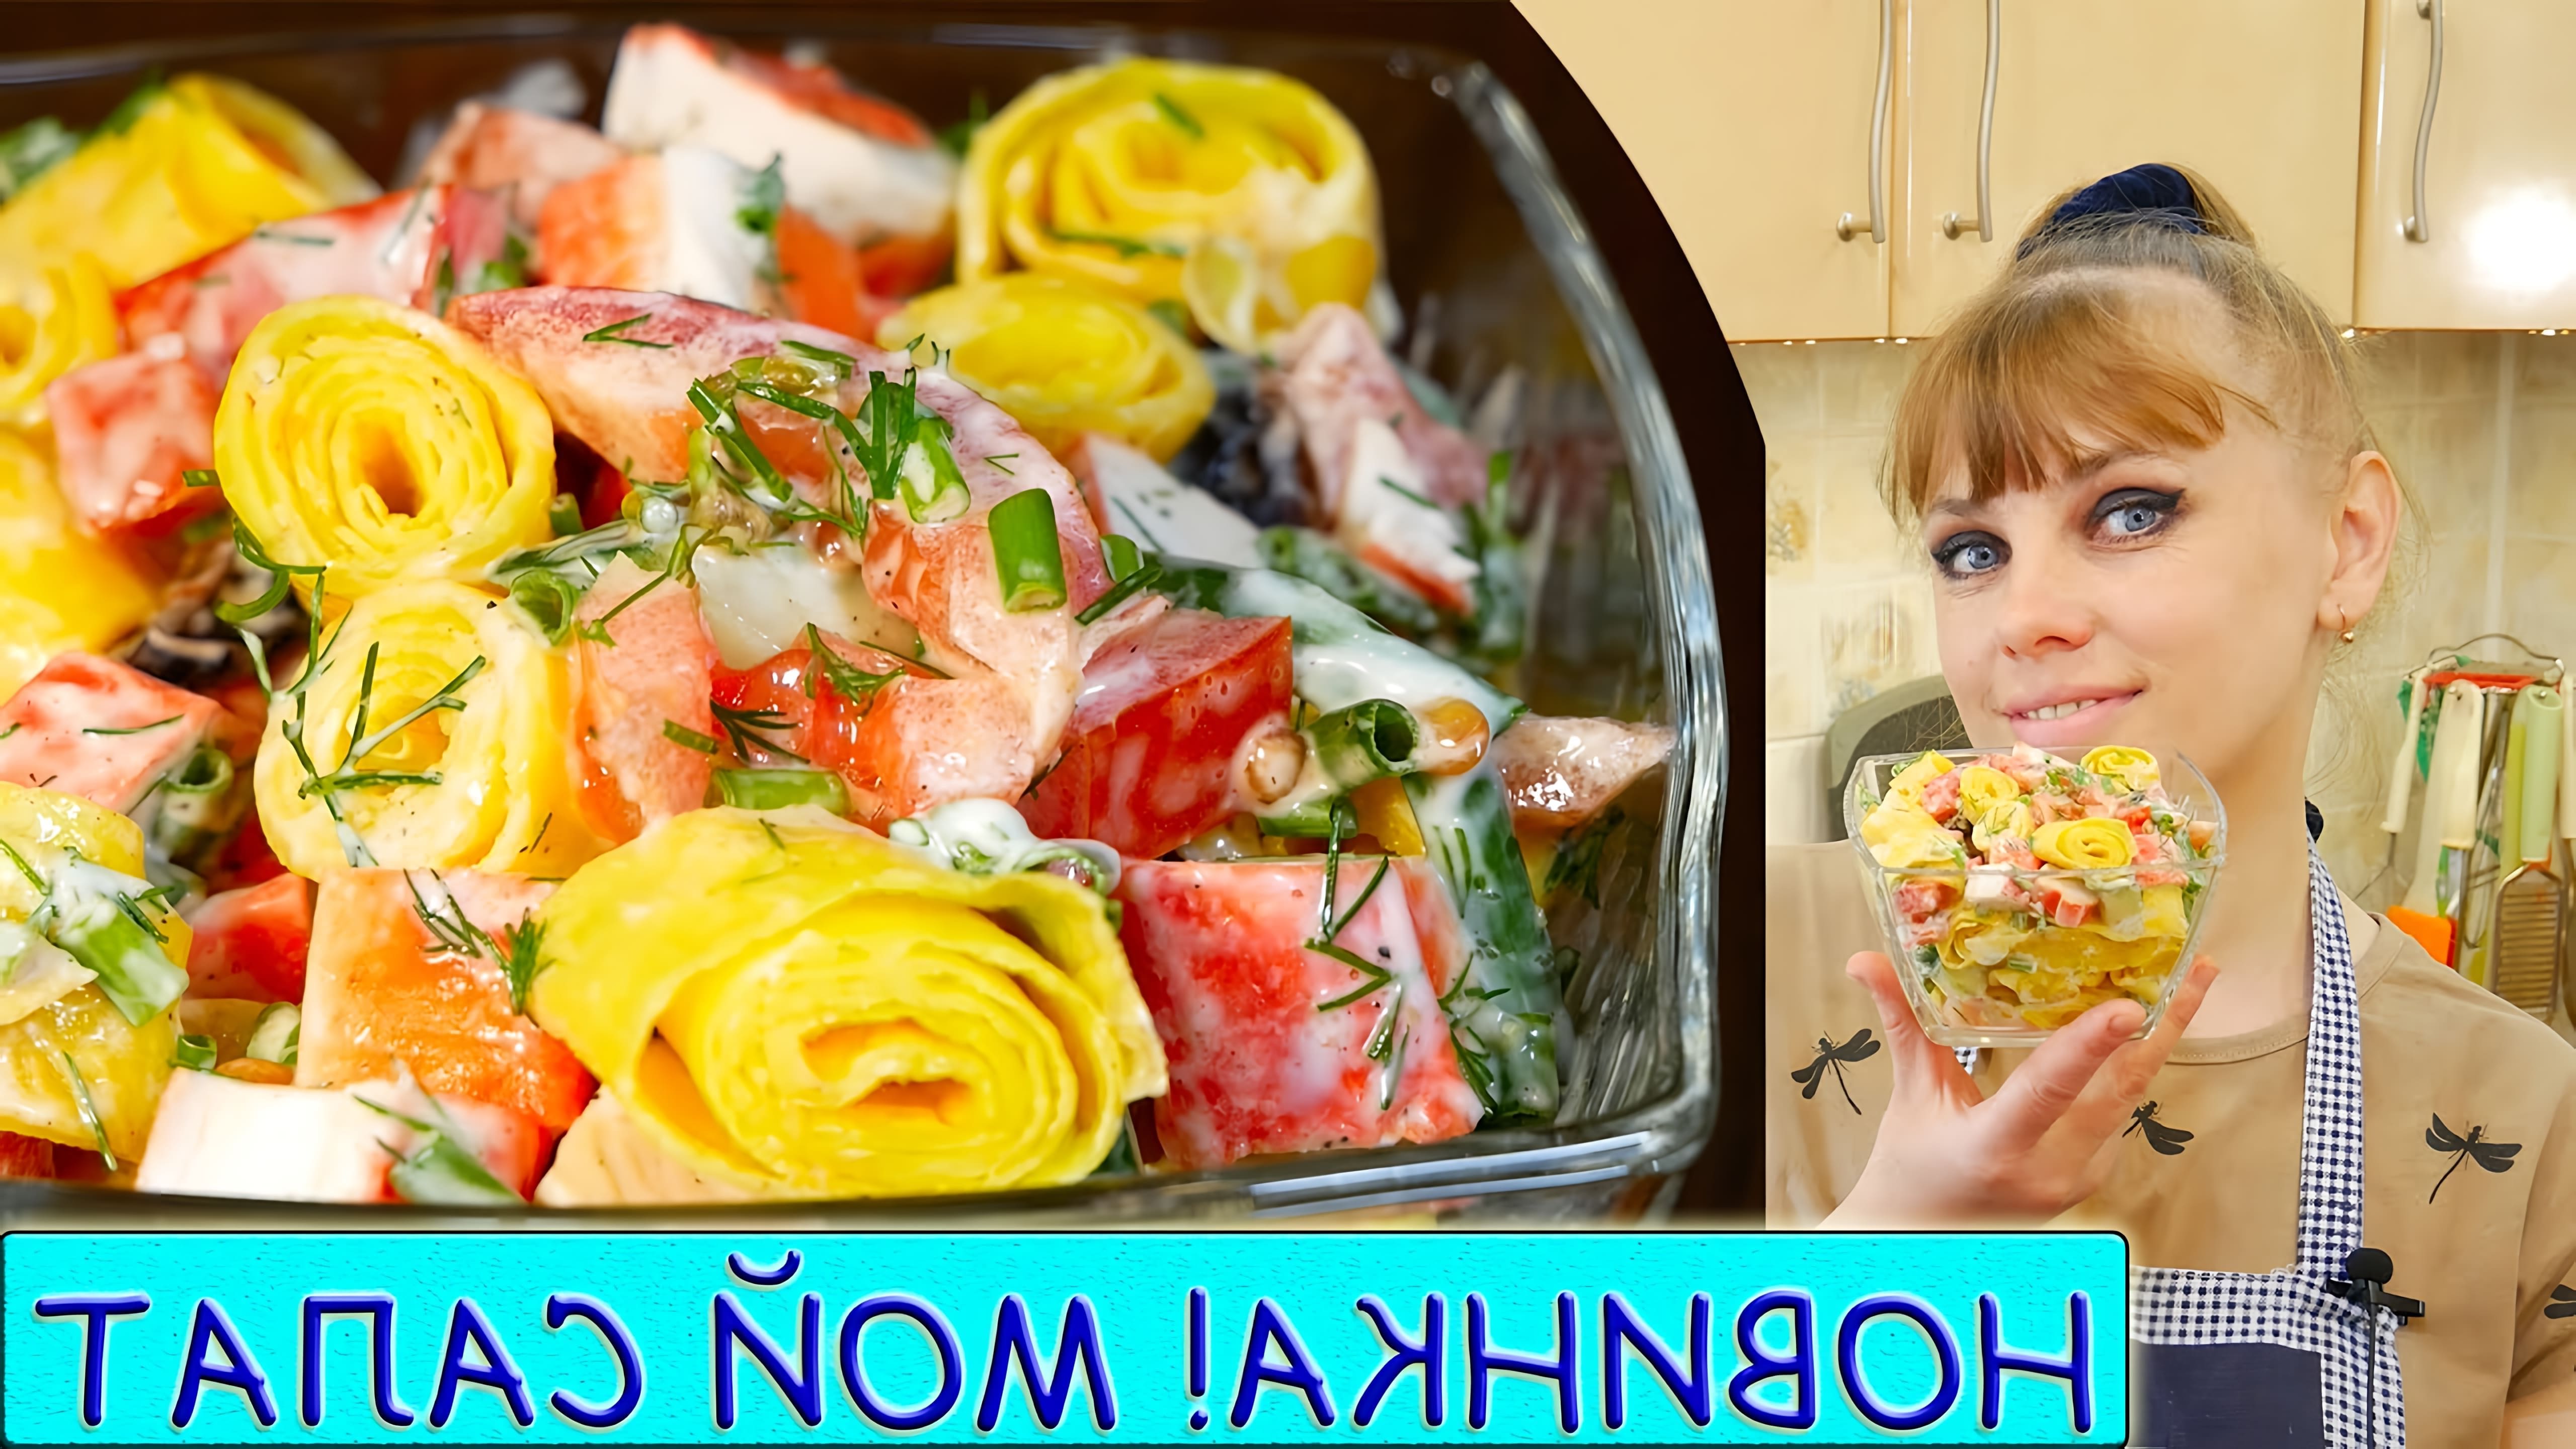 В этом видео Татьяна показывает, как приготовить летний вкусный салат из простых продуктов